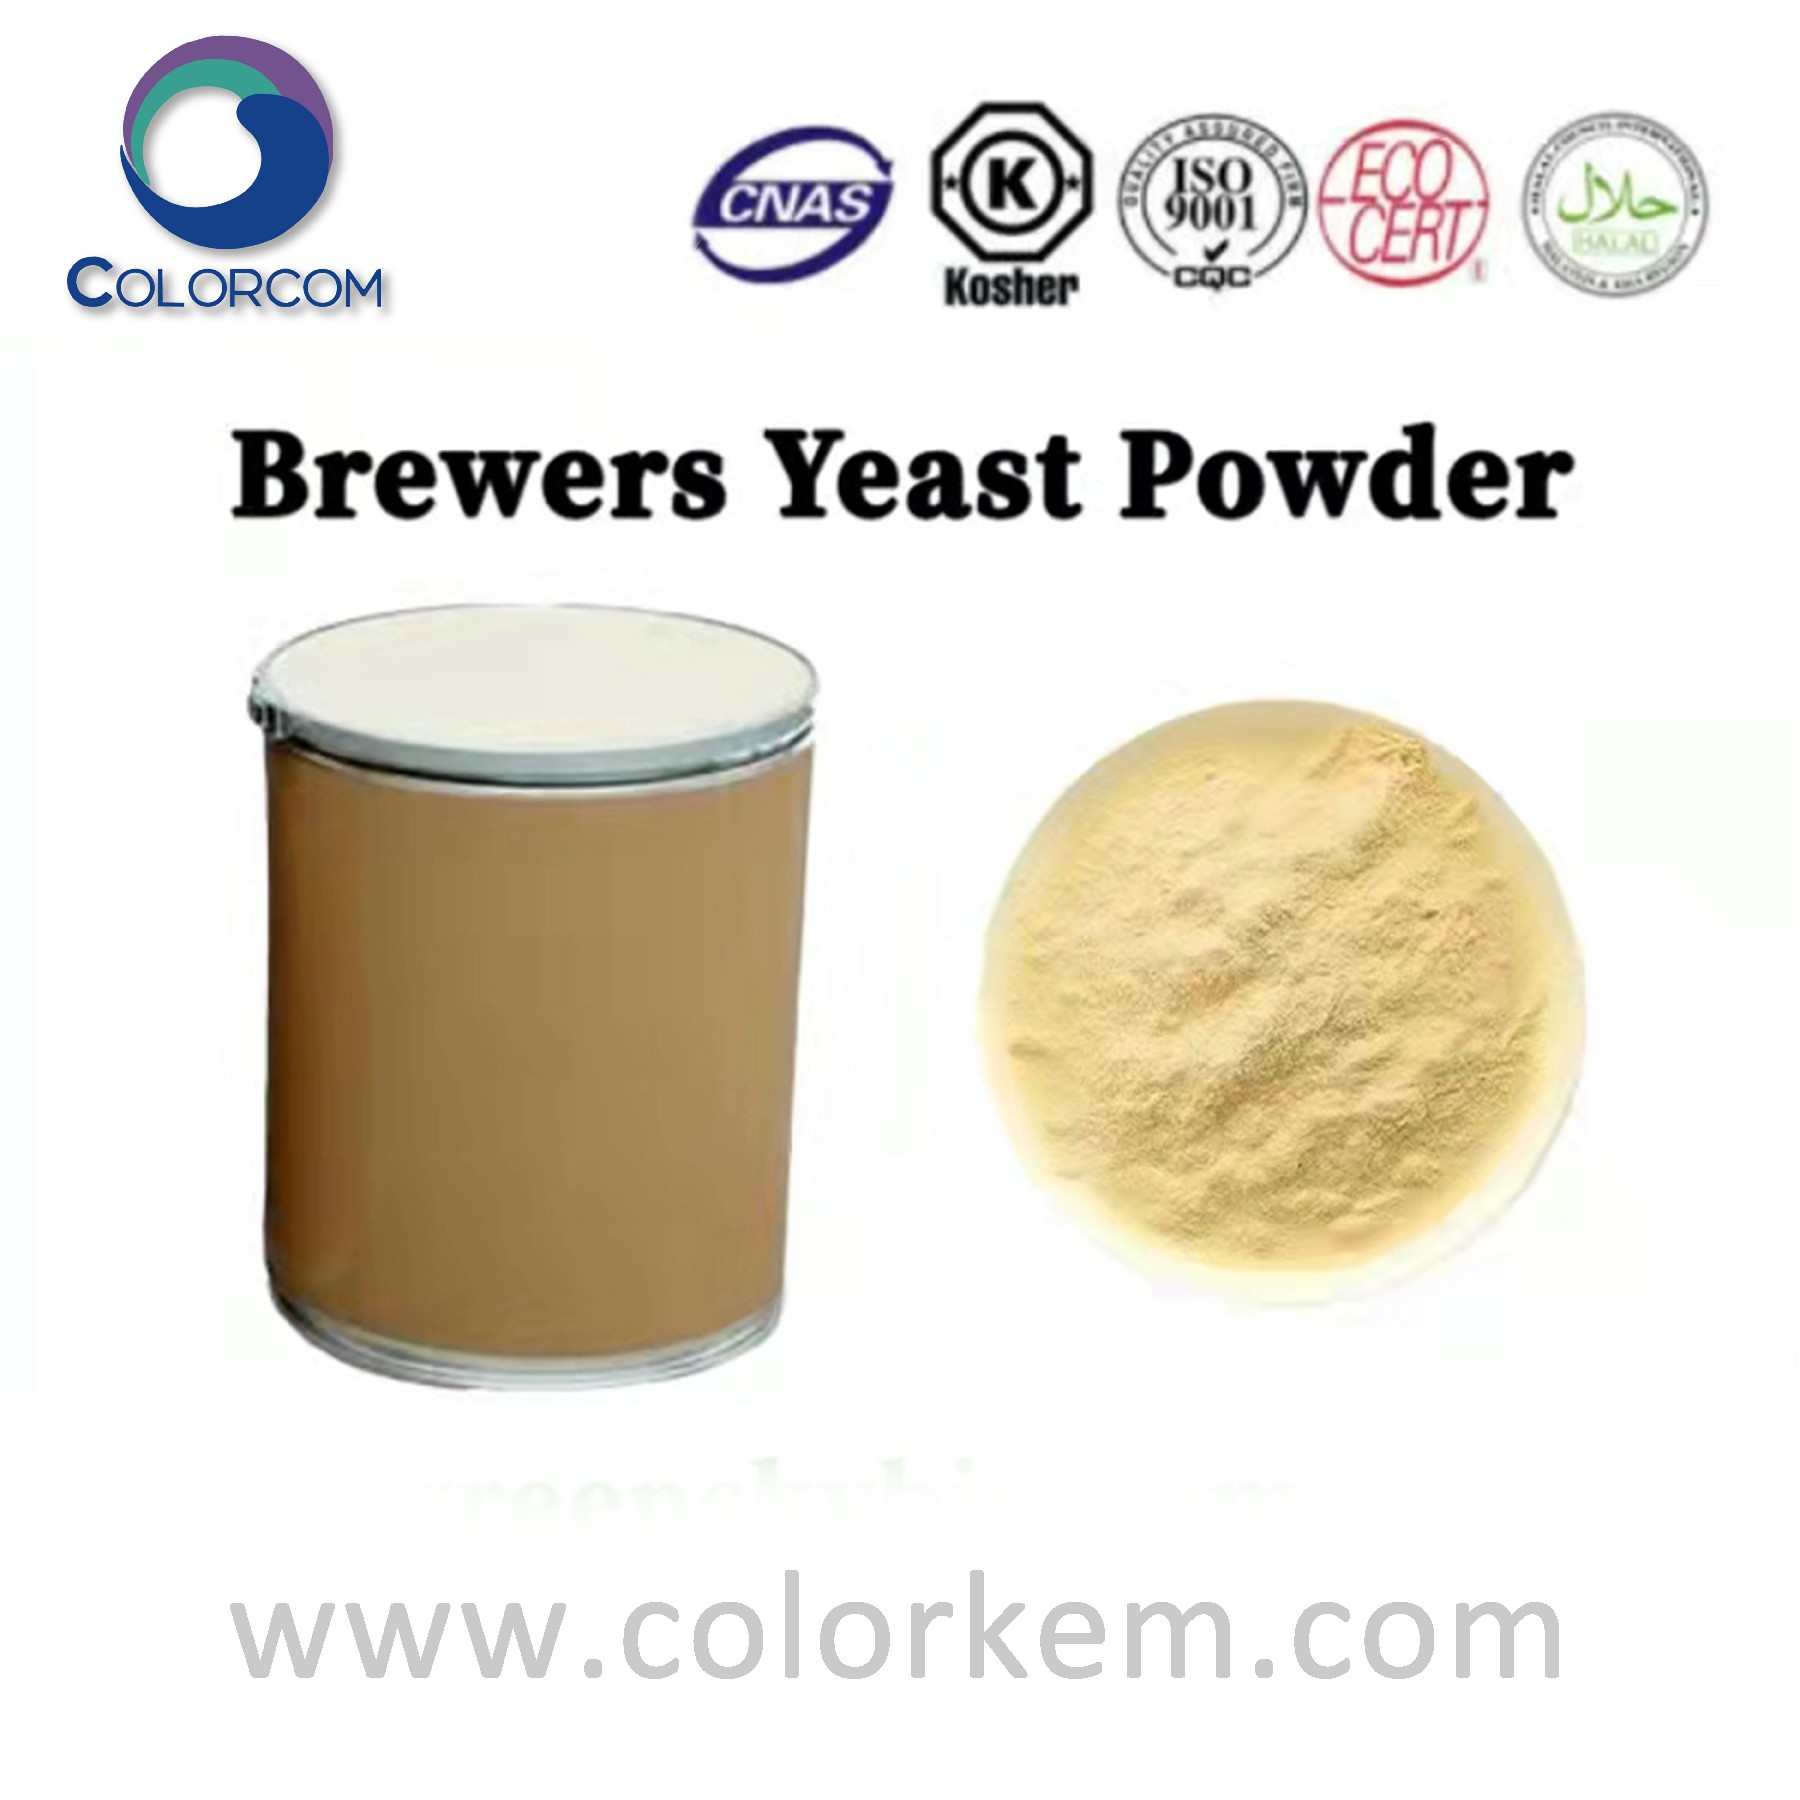 Brewers yeast powder